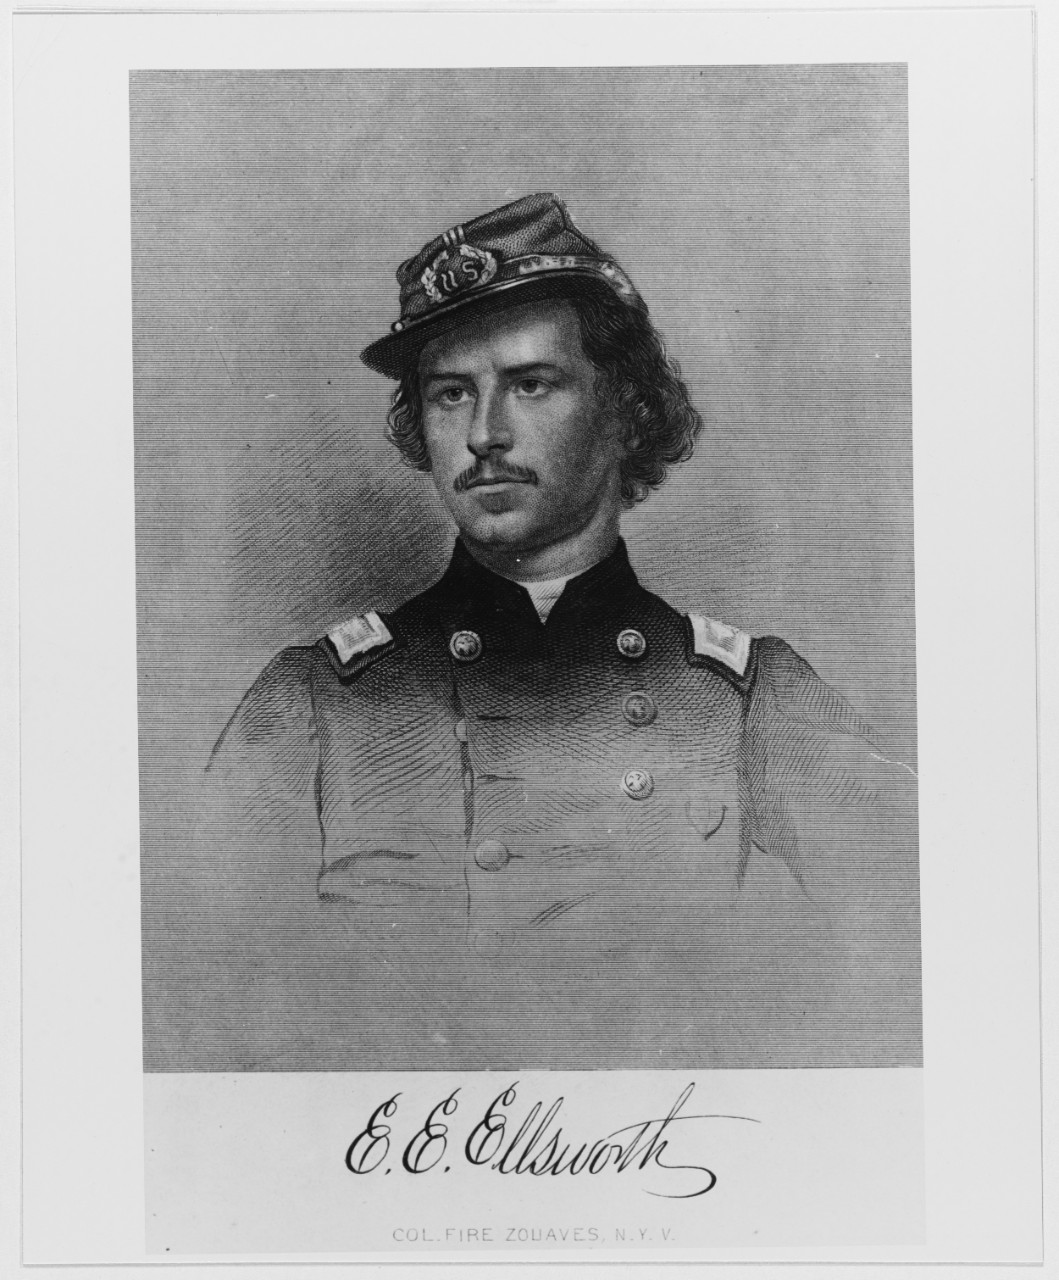 Colonel E. E. Ellsworth, USA